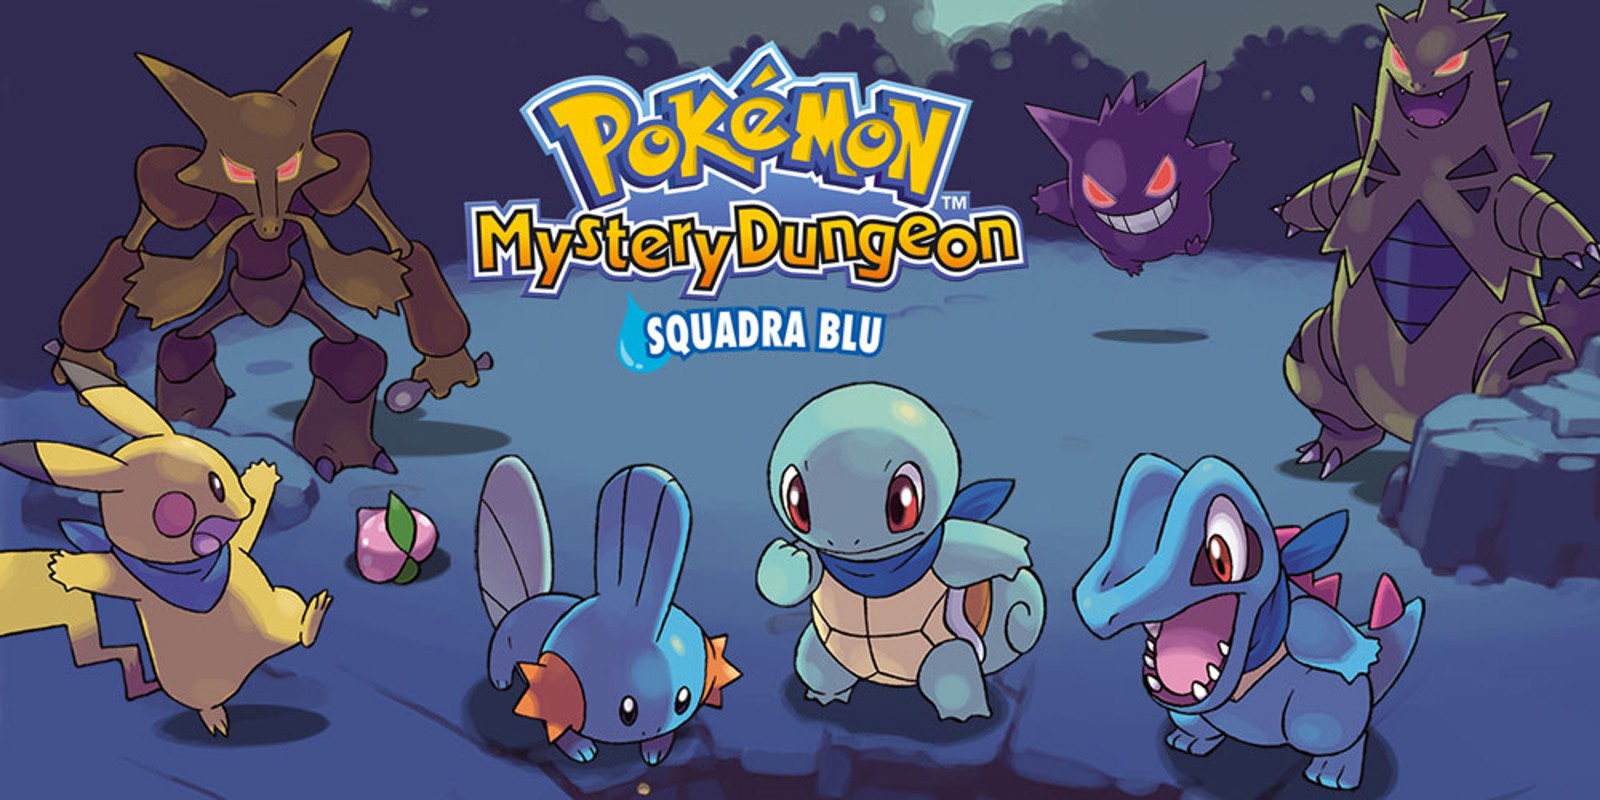 Pokémon Mystery Dungeon: Squadra Blu